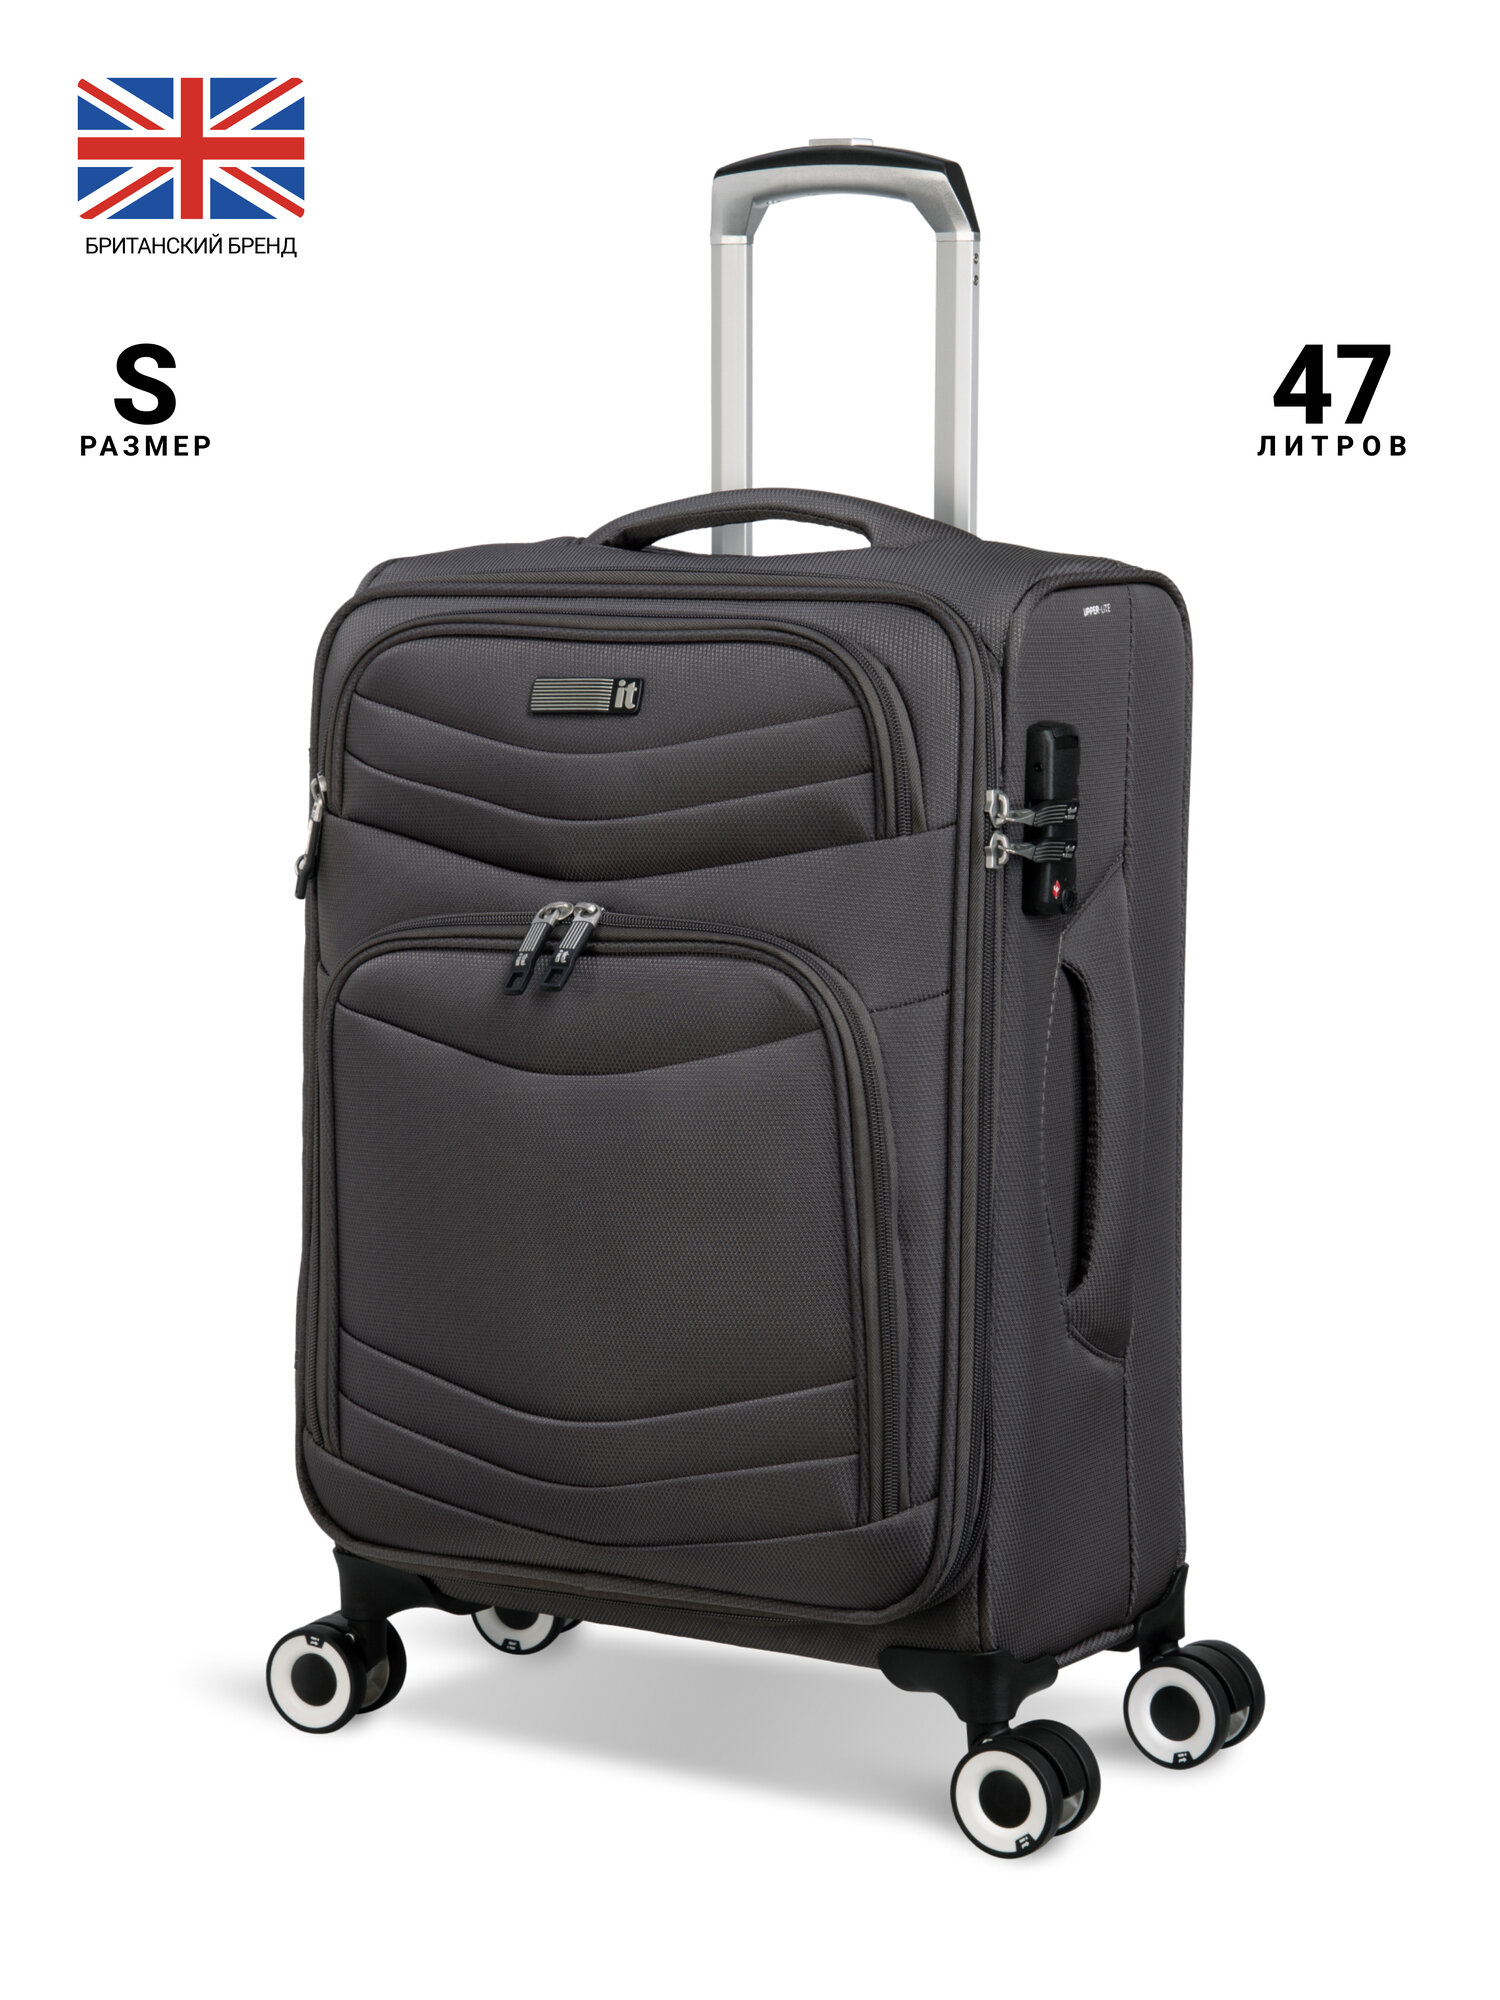 Маленький чемодан it luggage, модель Intrepid, размер S-ручная кладь, текстиль, 47 л, 57 см